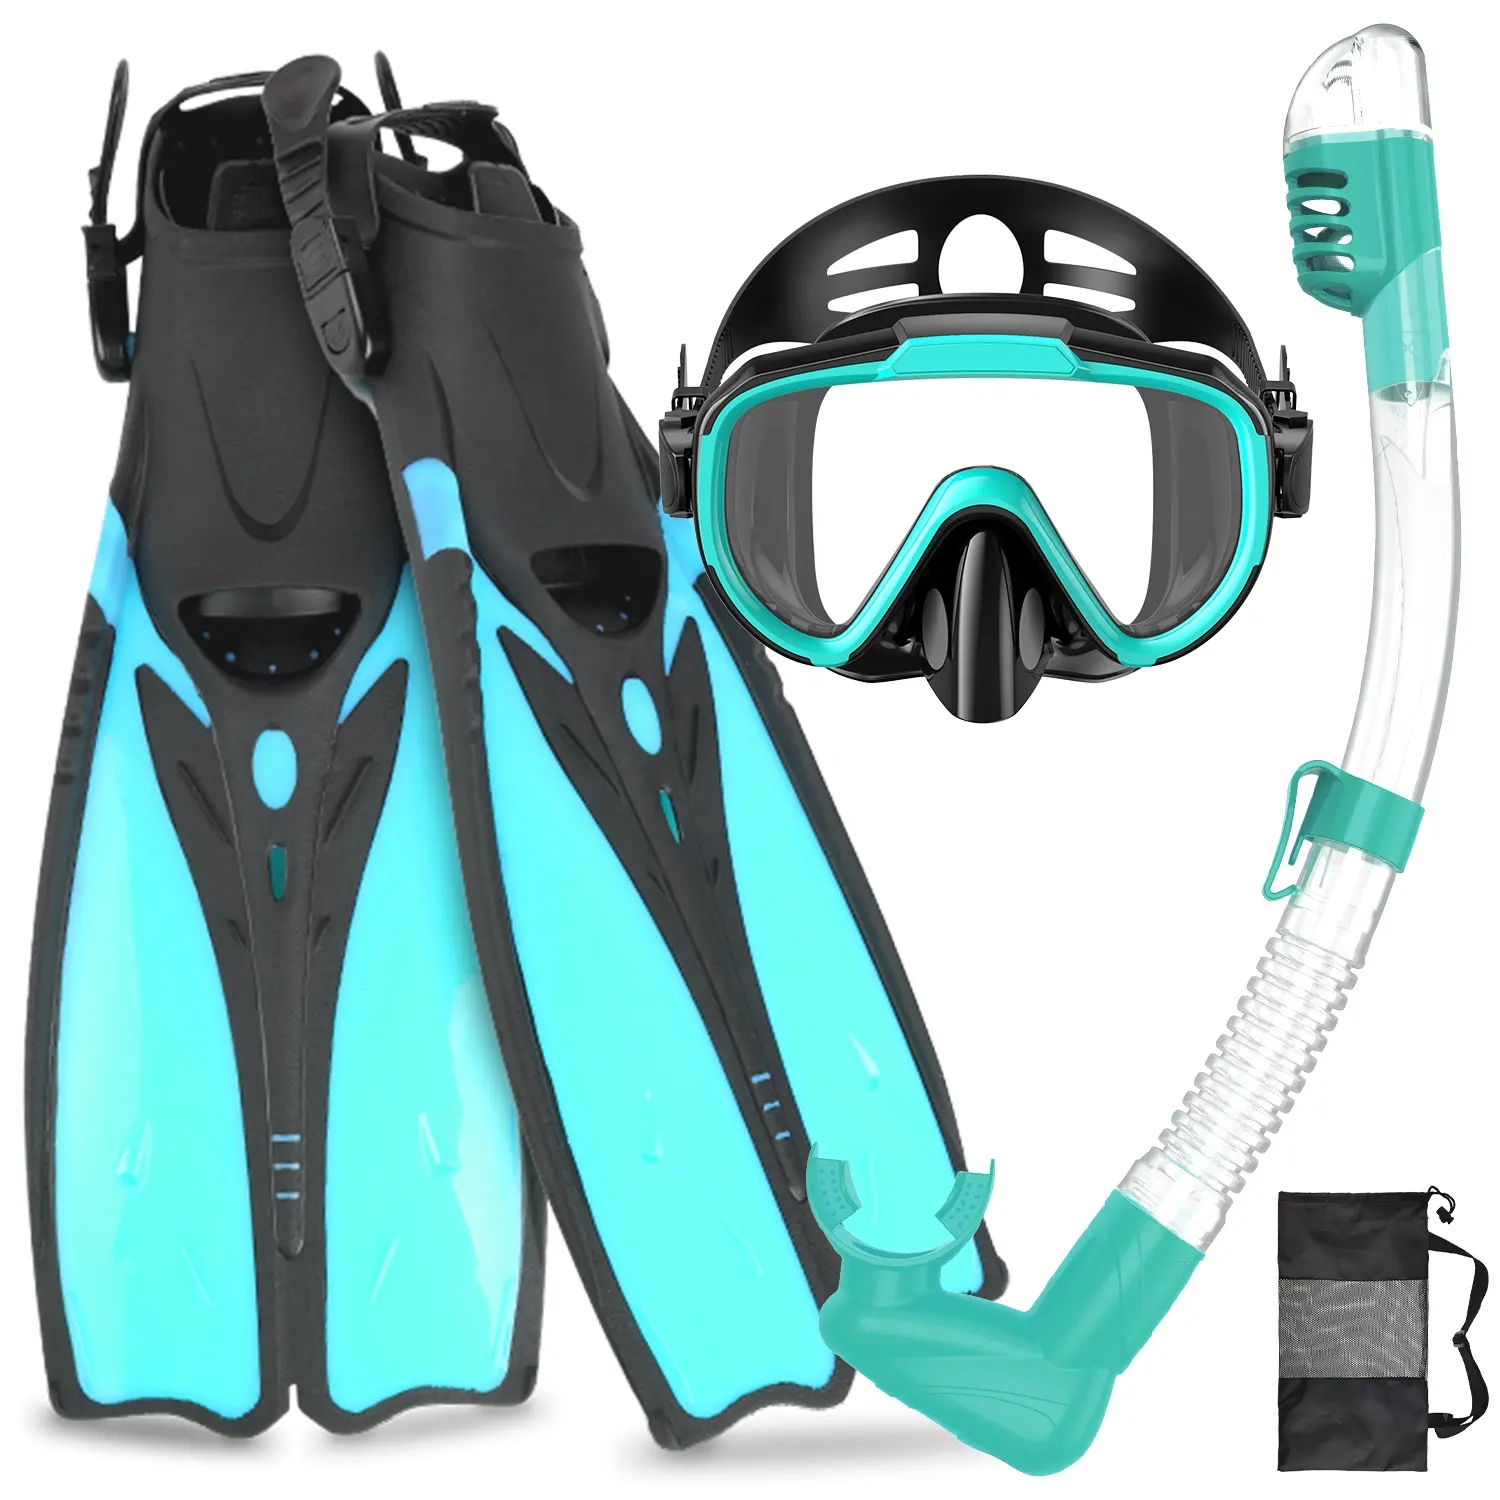 새로운 다이빙 고글 마스크 스쿠버 스노클링 키트 수영 플리퍼 핀이있는 스노클 세트 성인 다이빙 장비